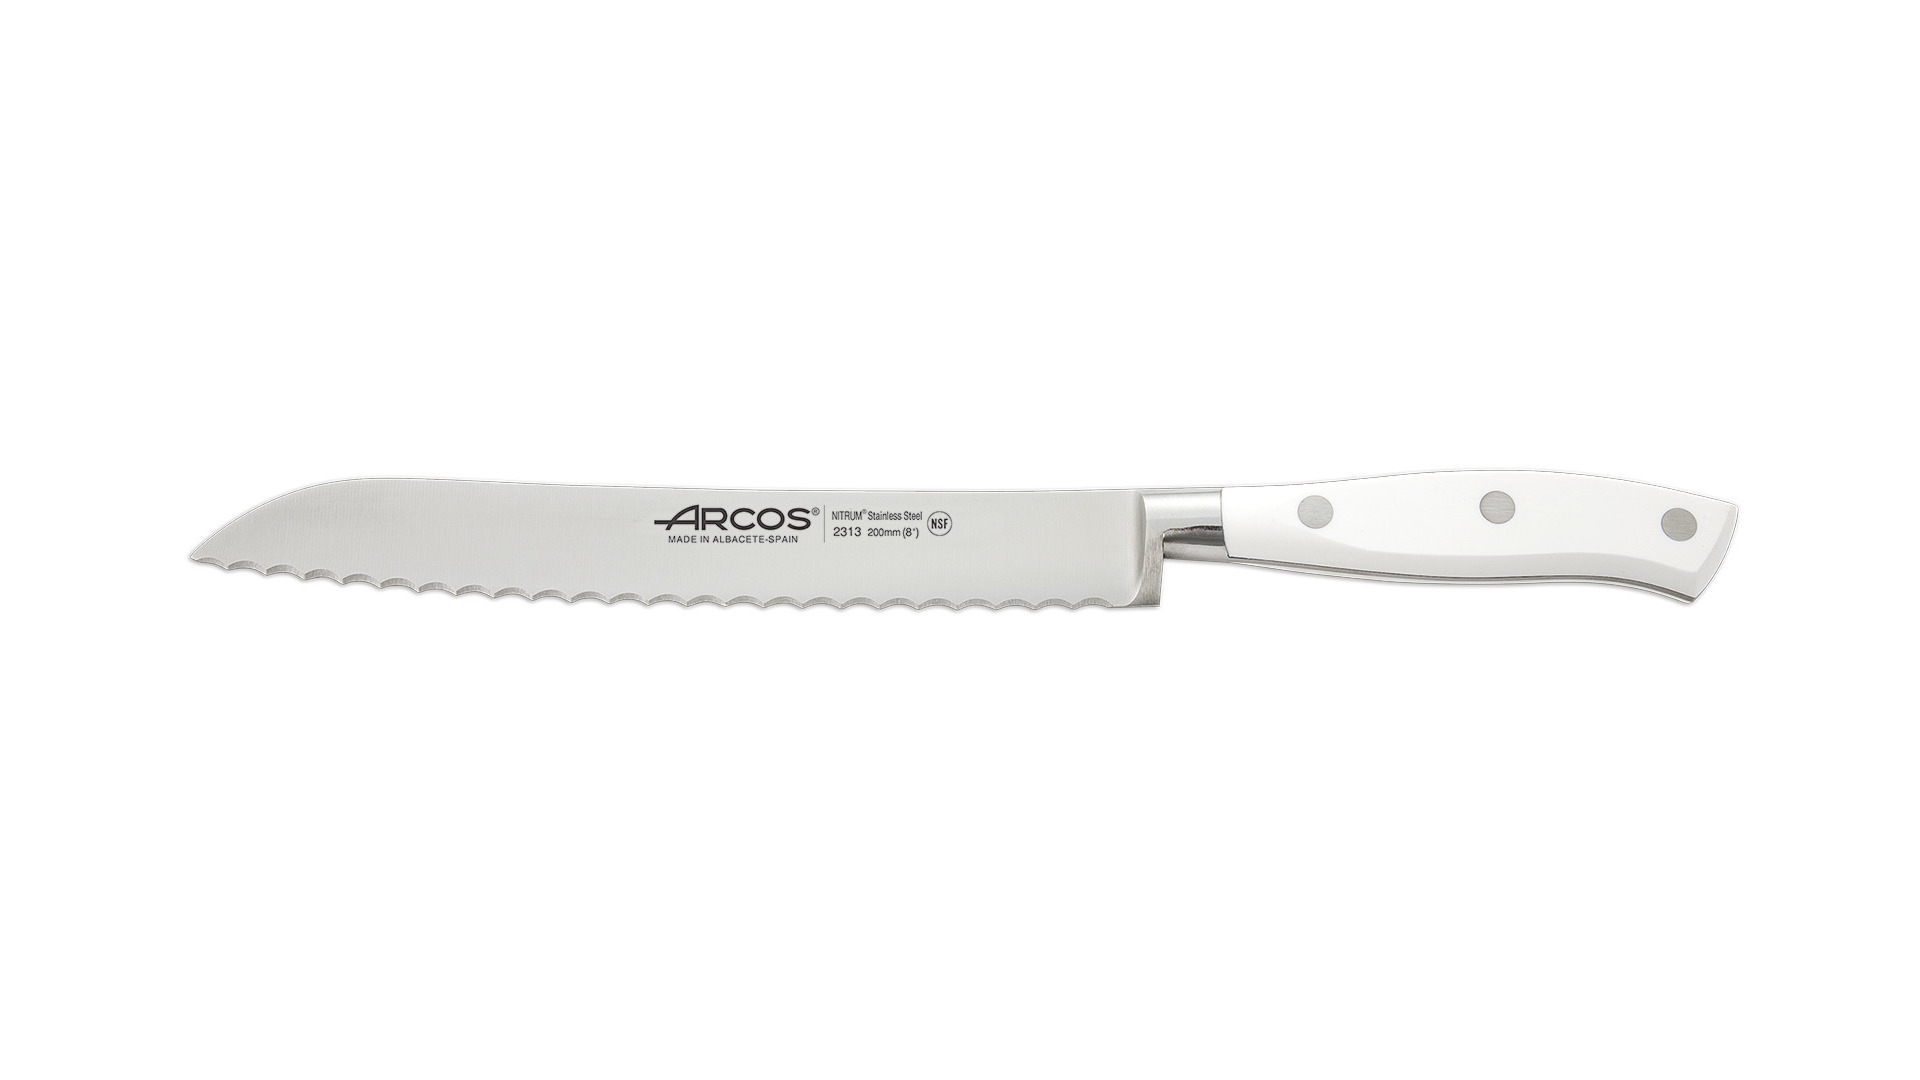 Нож для хлеба Arcos Riviera Blanca 20 см, сталь нержавеющая, белый-Sale